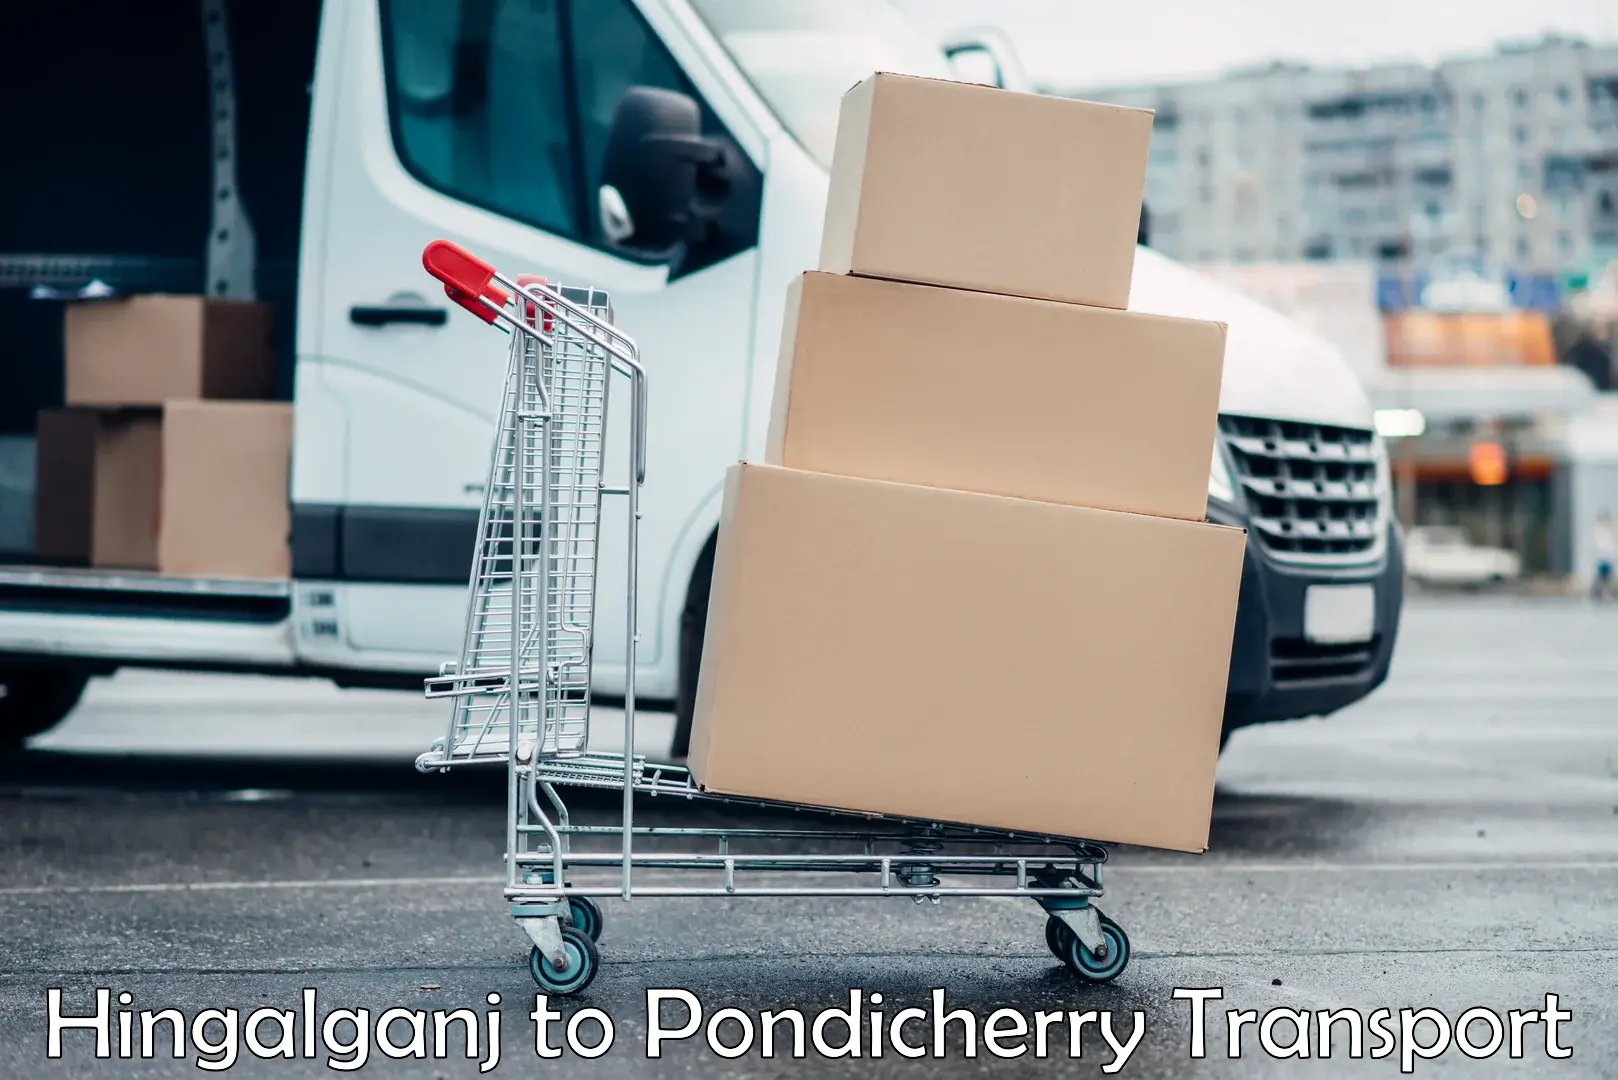 Delivery service Hingalganj to Pondicherry